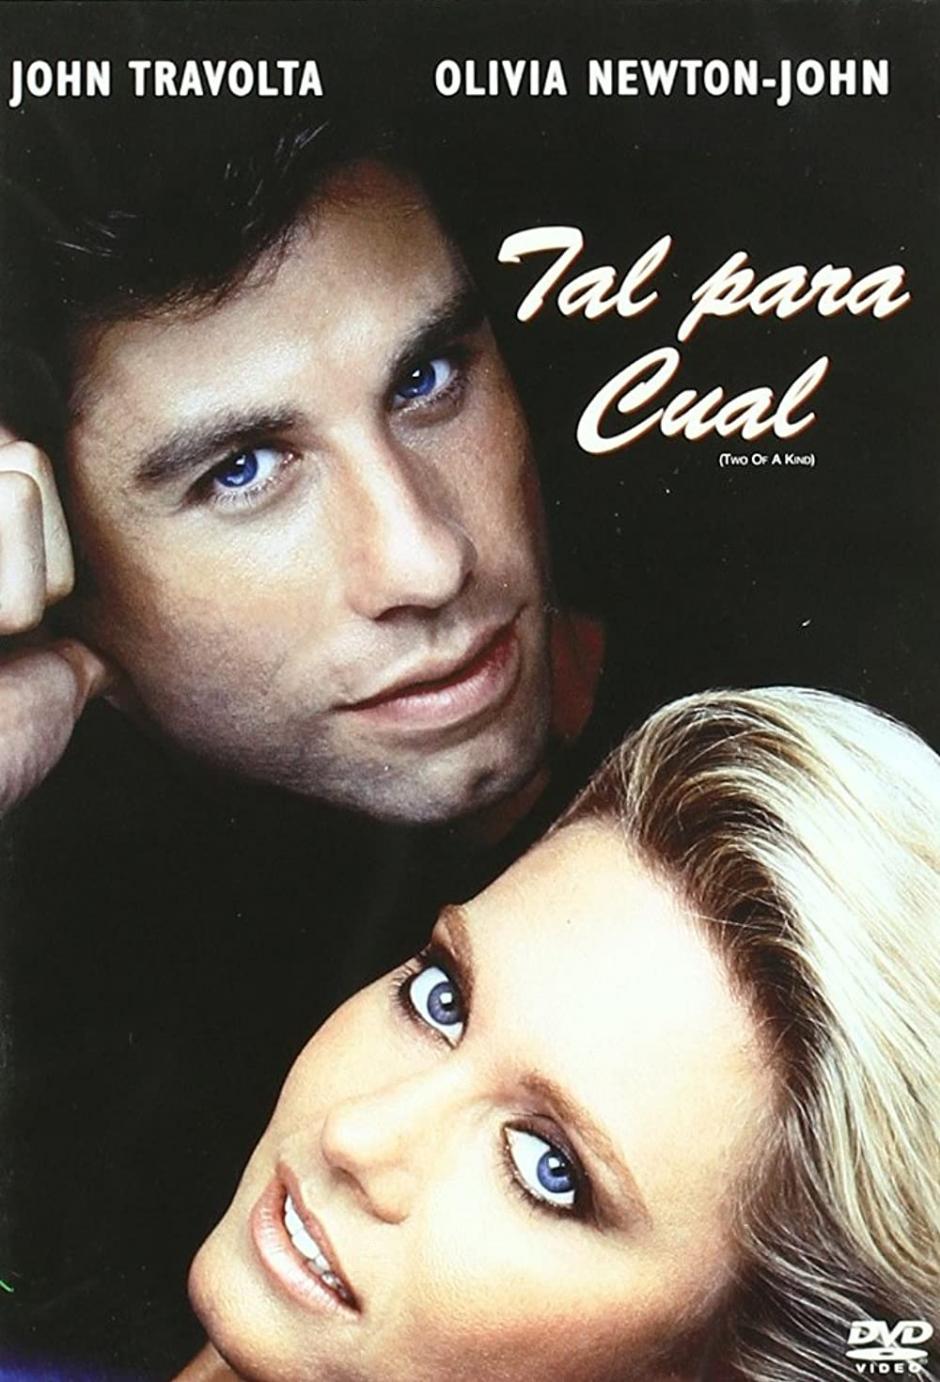 Tal para cual, 1983, nuevamente protagoniza una película junto a John Travolta.